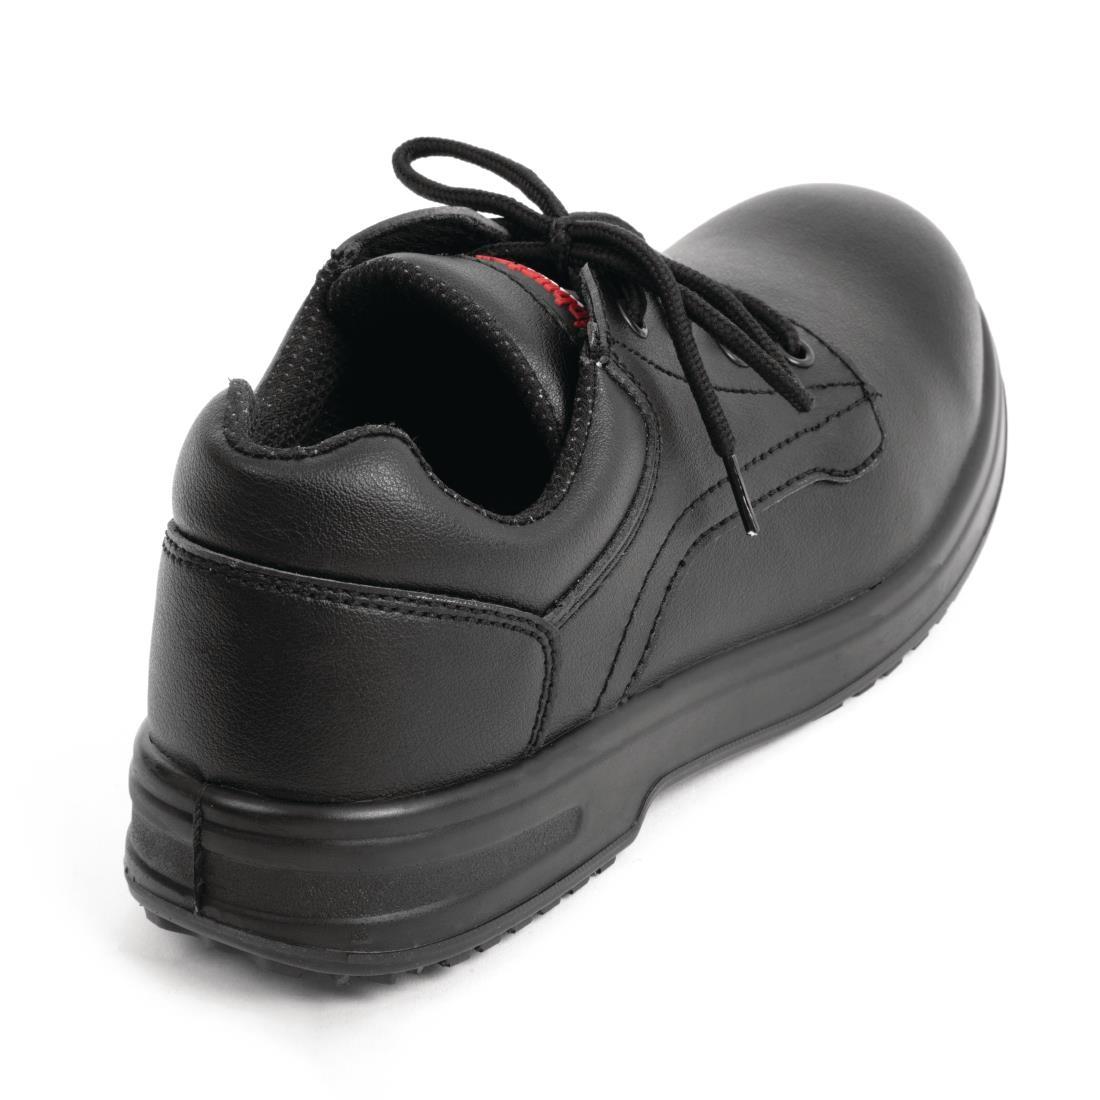 Slipbuster Basic Shoes Slip Resistant Black 45 - BB498-45  - 3